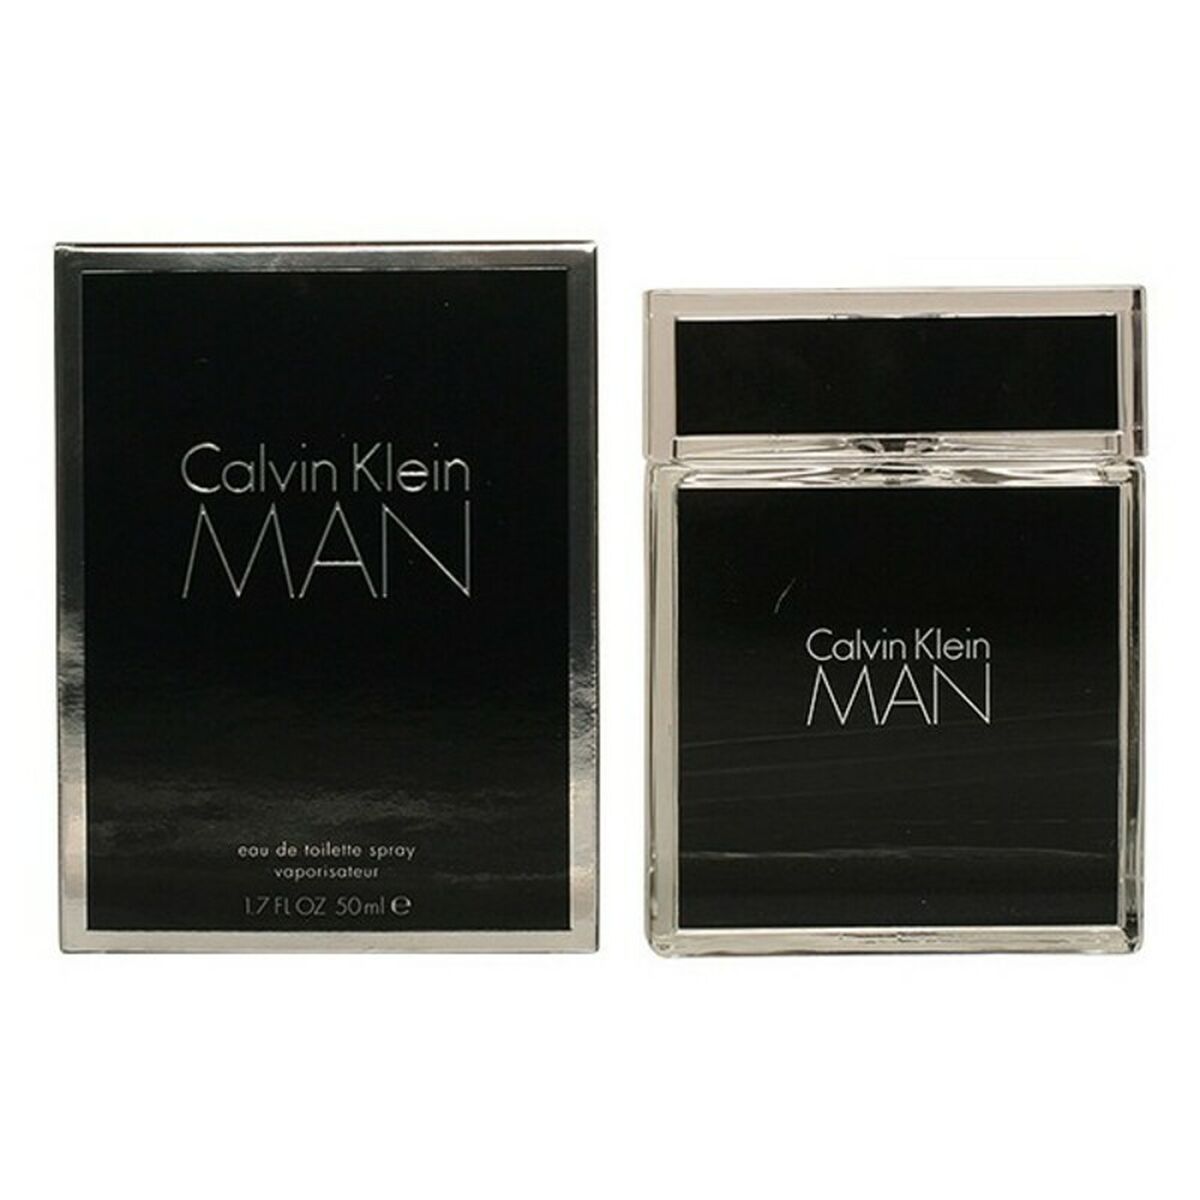 Parfum Homme Man Calvin Klein EDT 100 ml